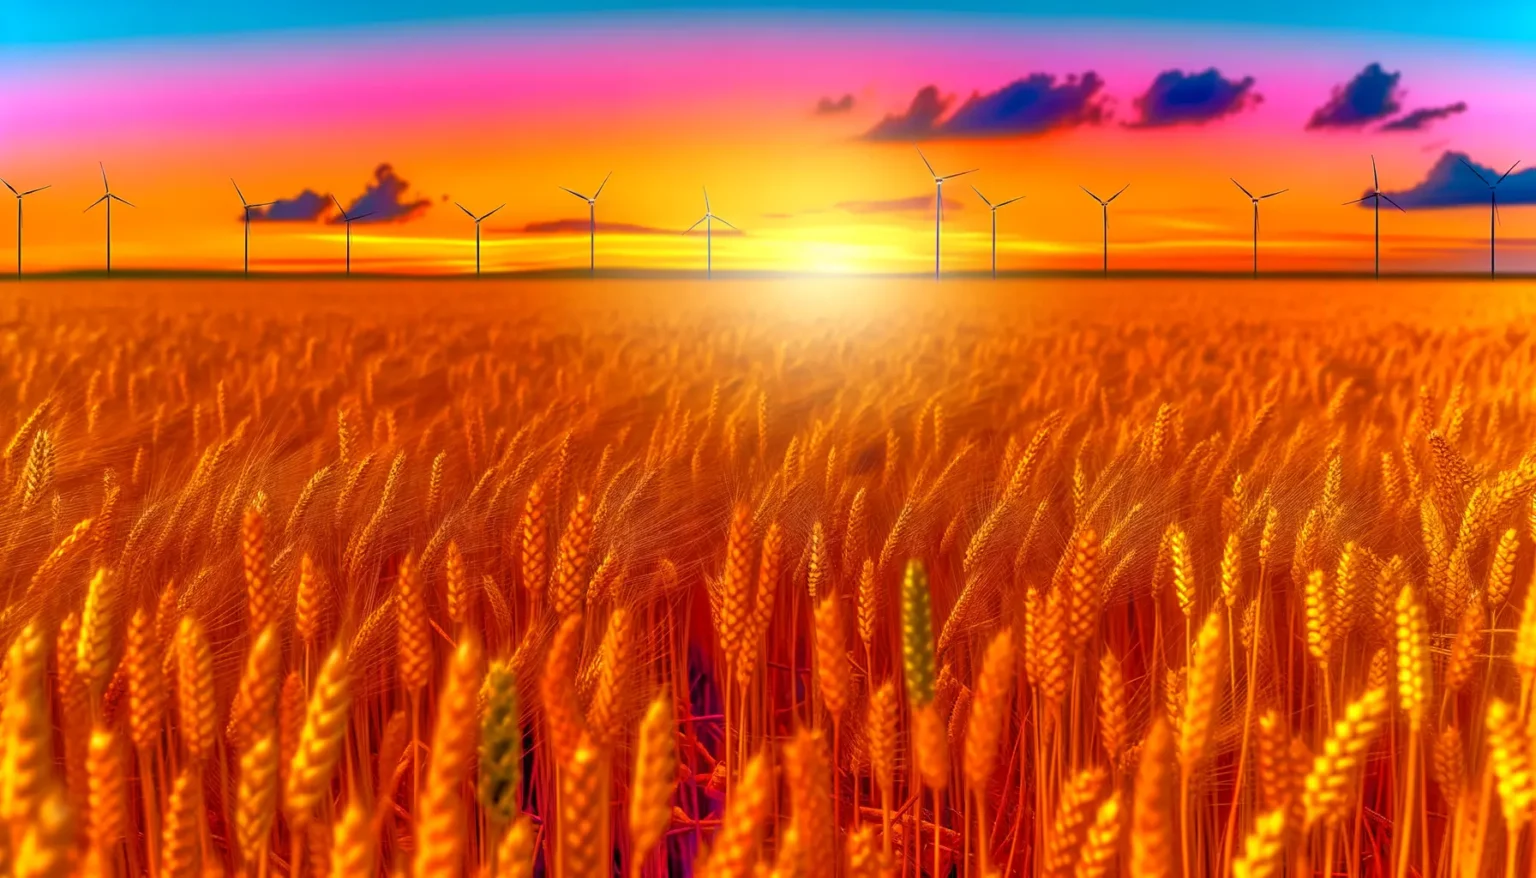 Ein leuchtendes Weizenfeld im Vordergrund mit mehreren Windkraftanlagen am Horizont unter einem dramatischen, farbenprächtigen Himmel bei Sonnenuntergang.